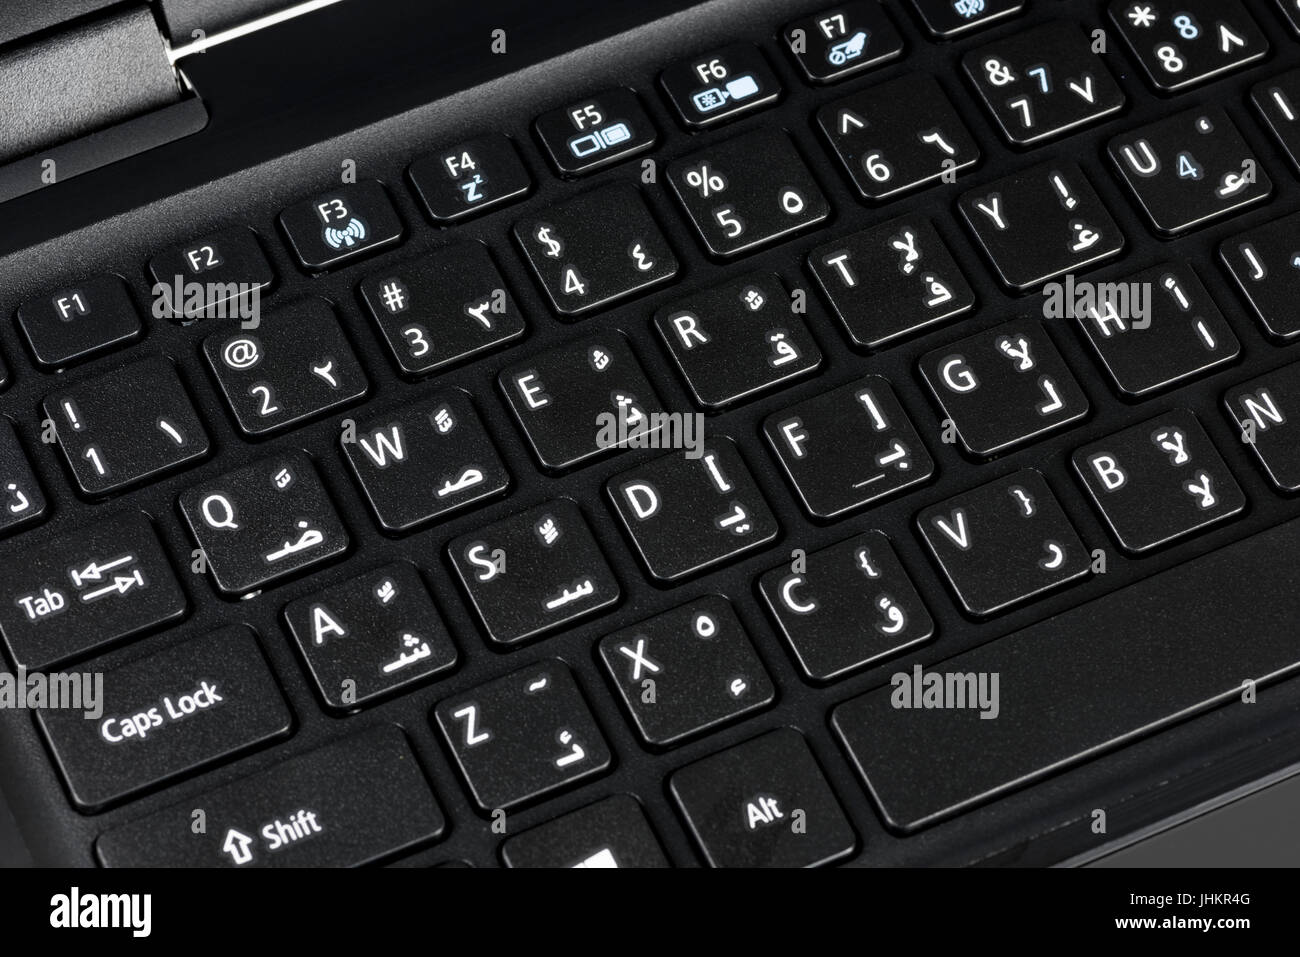 Nahaufnahme einer QWERTY-Tastatur Englisch und Arabisch mit Buchstaben,  Zahlen und Symbole Stockfotografie - Alamy